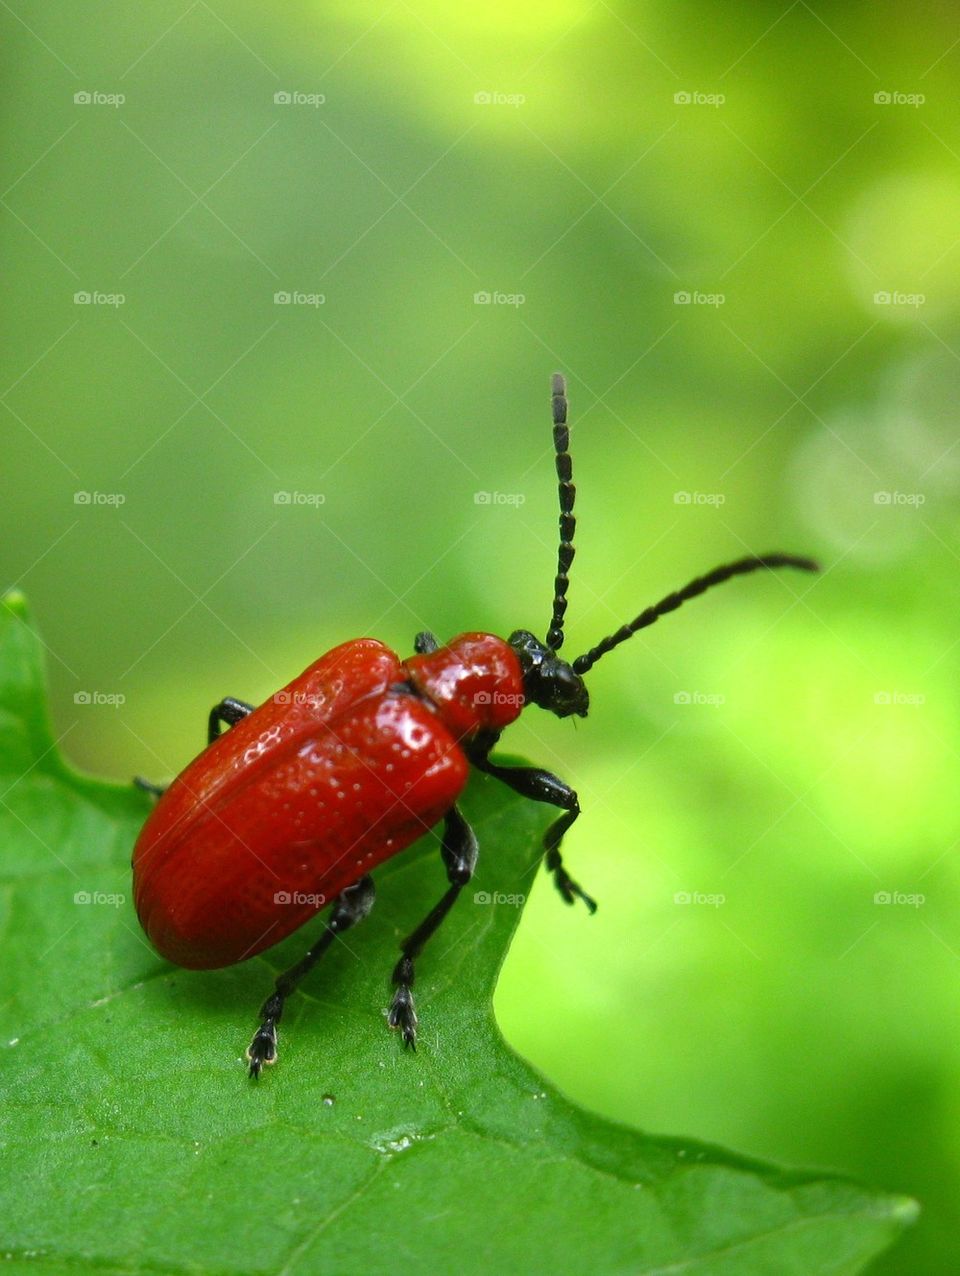 Scarlet Lily beetle